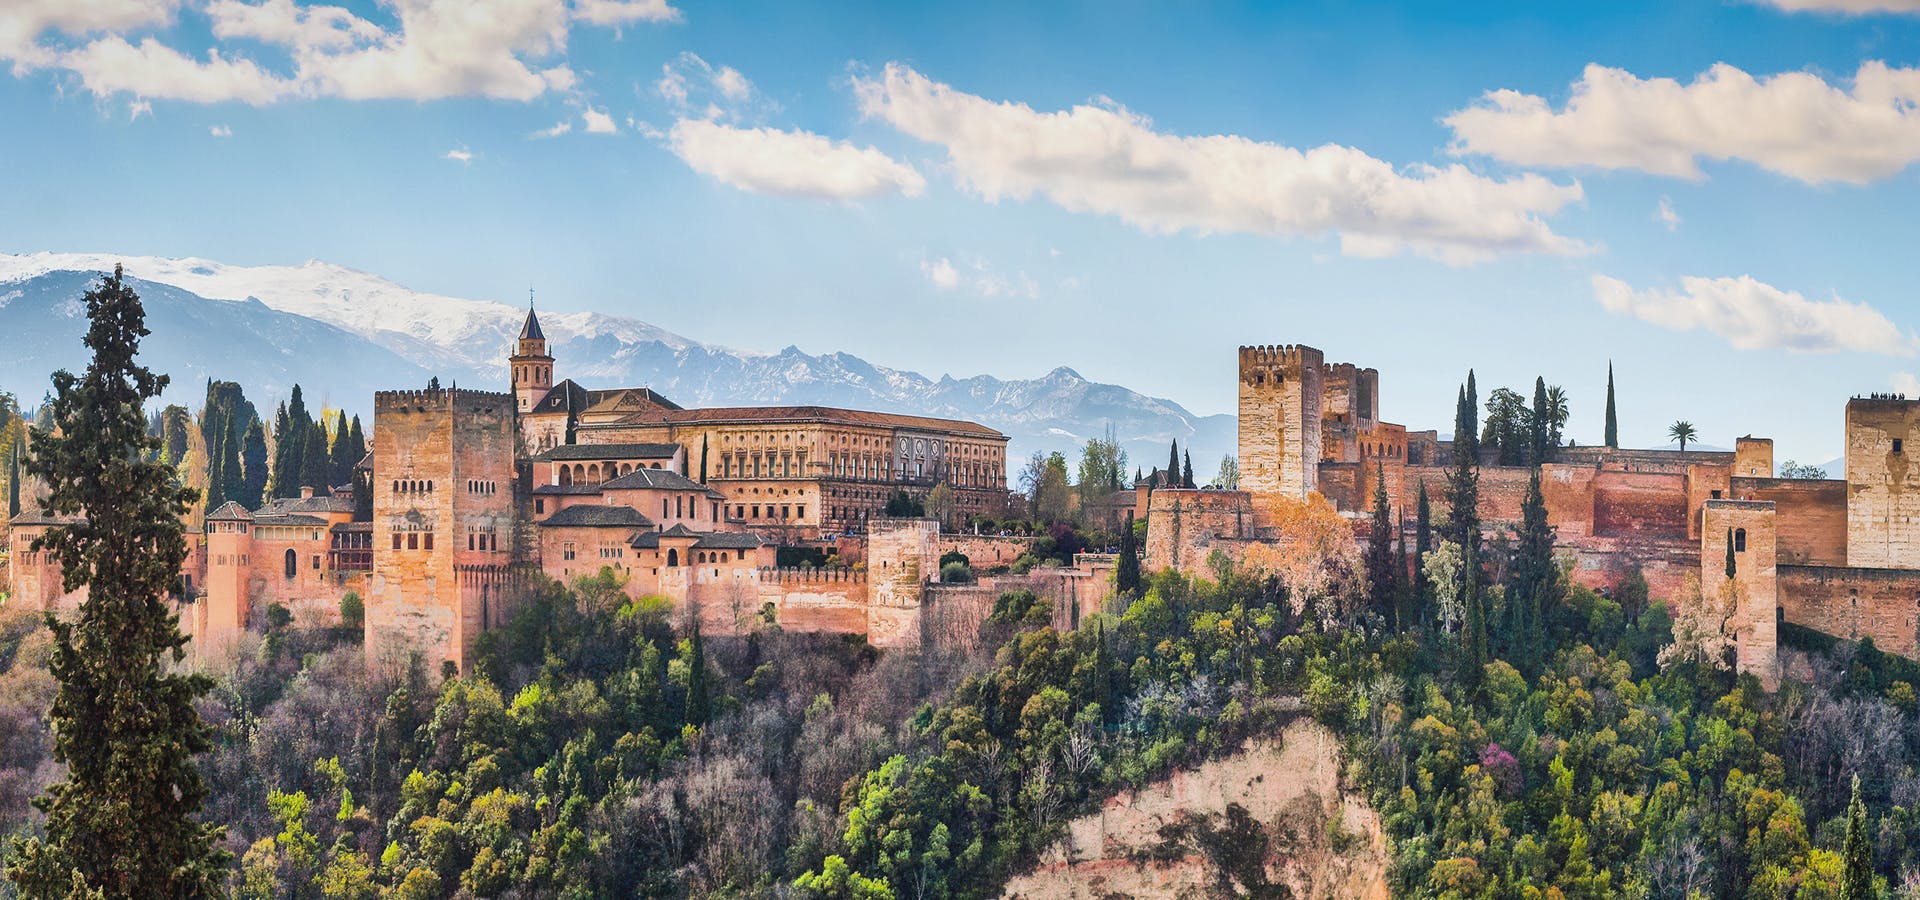 Tour com entradas incluídas para toda a Alhambra (palácios, alcáçova, Generalife e jardins)